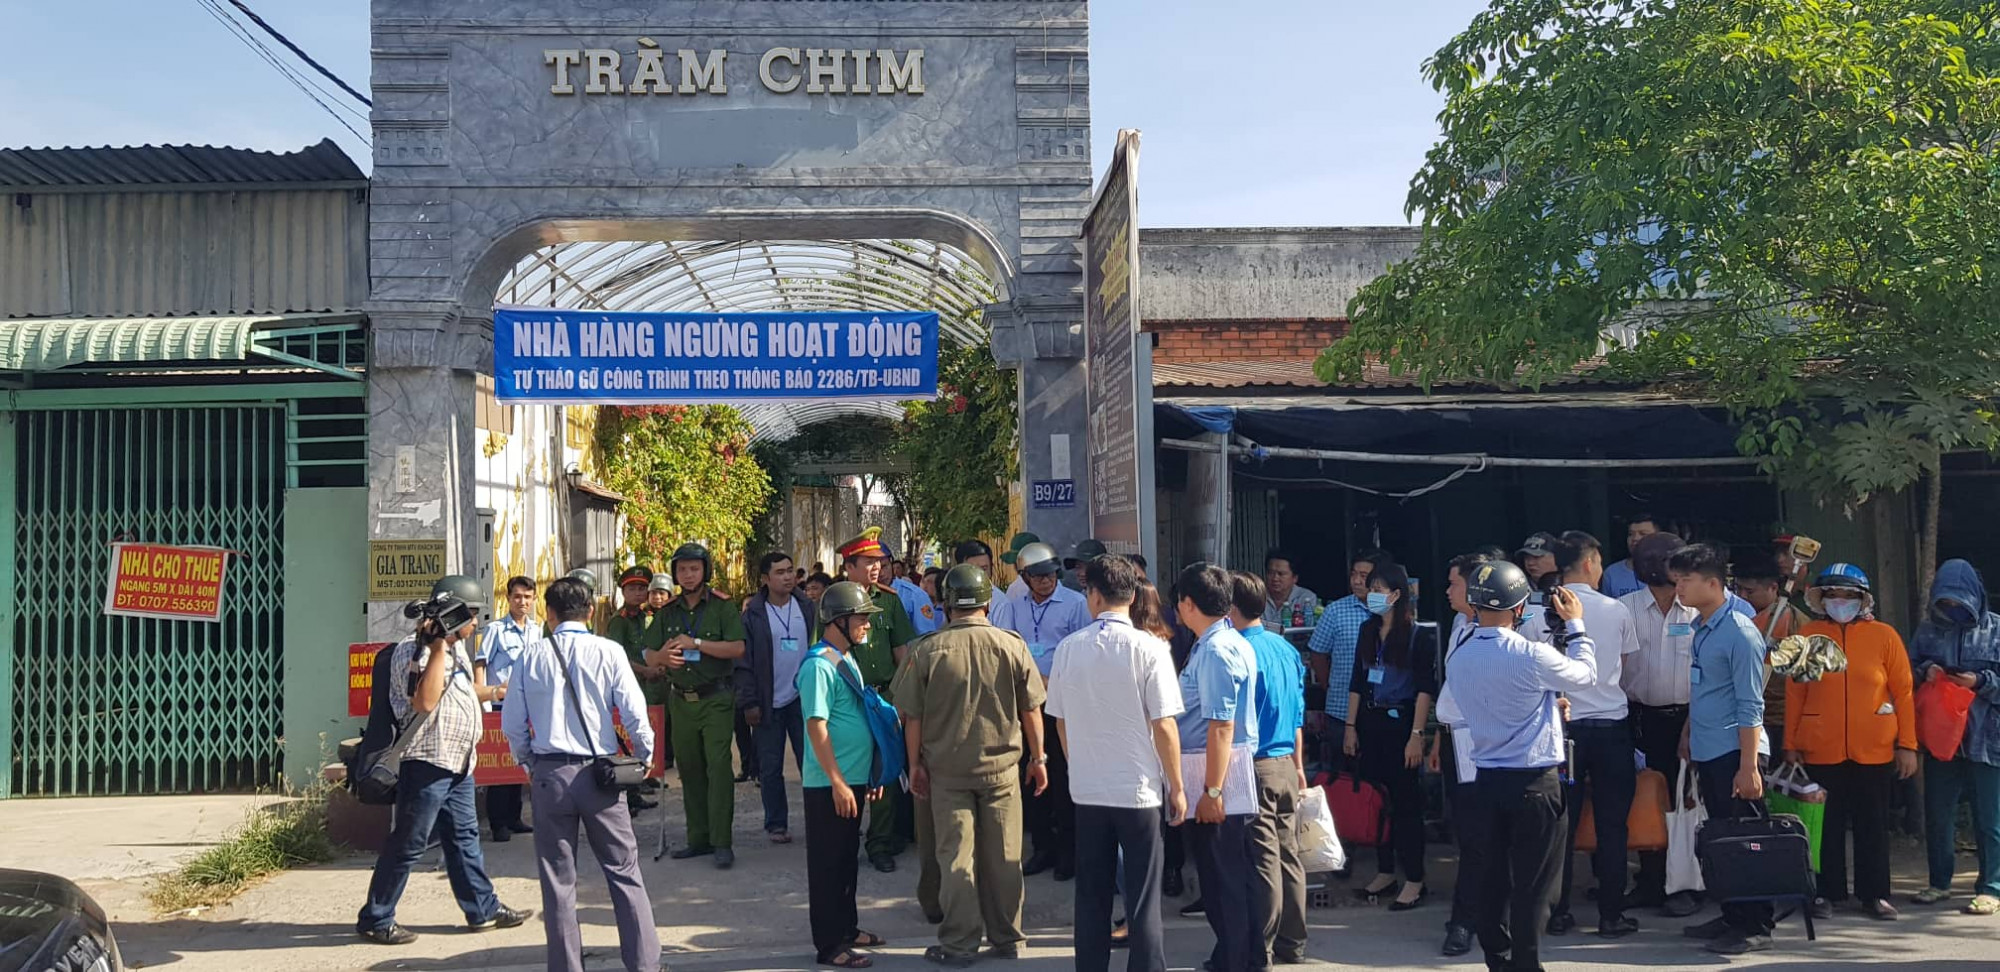 Hôm nay, bắt đầu cưỡng chế công trình xây trái pháp Resort Tràm Chim